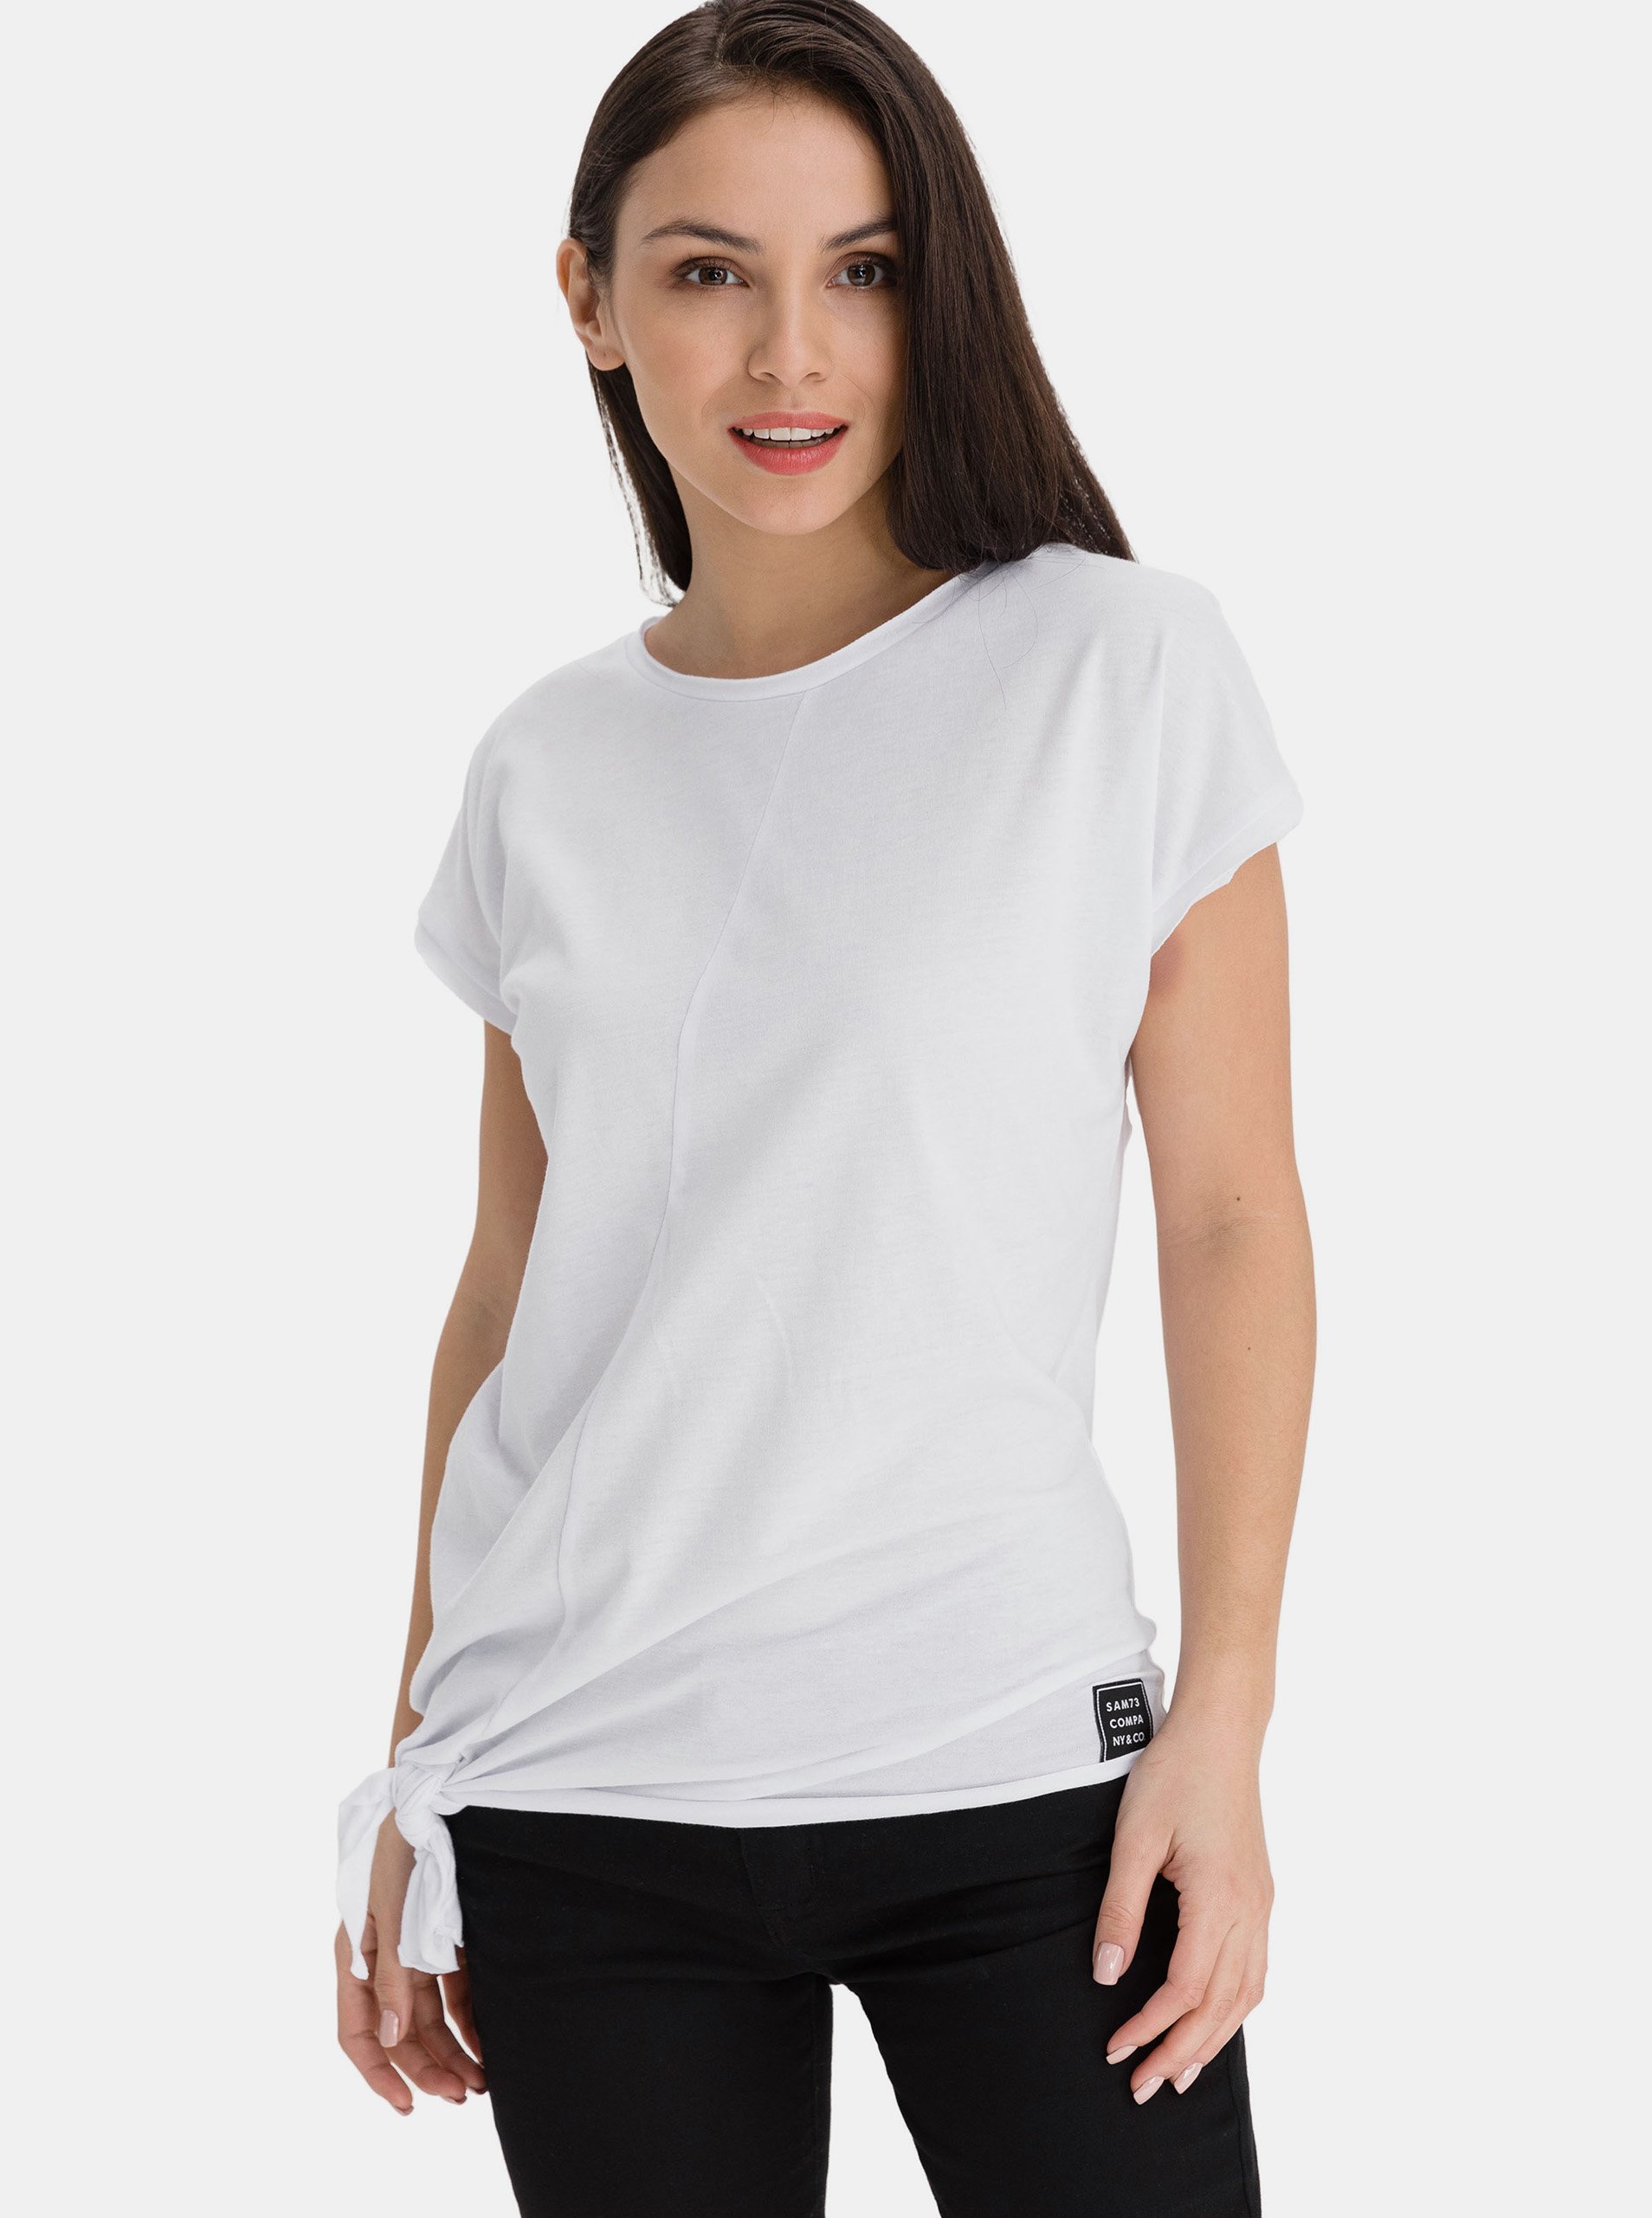 Lacno Biele dámske asymetrické tričko SAM 73